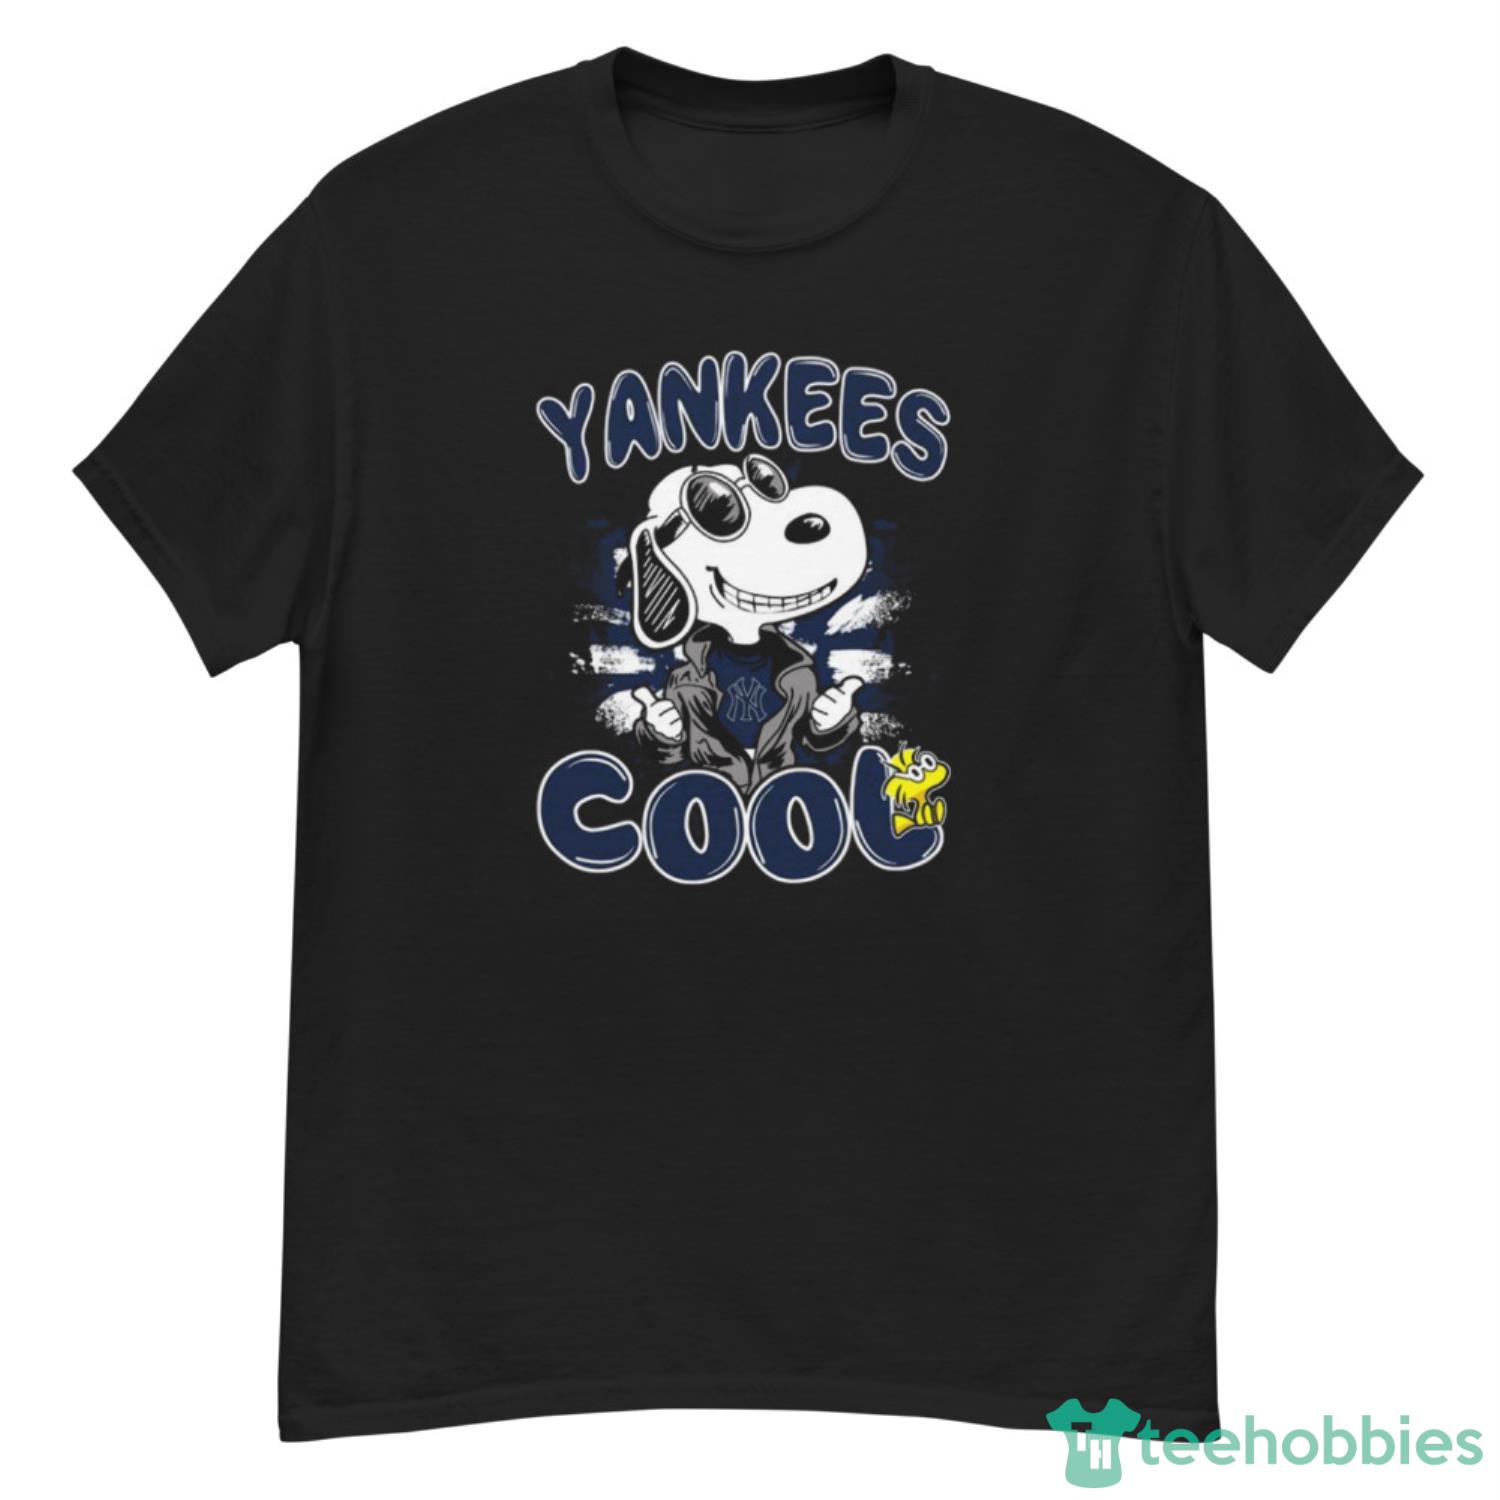 MLB Baseball New York Yankees Cool Snoopy Shirt T Shirt - G500 Men’s Classic T-Shirt